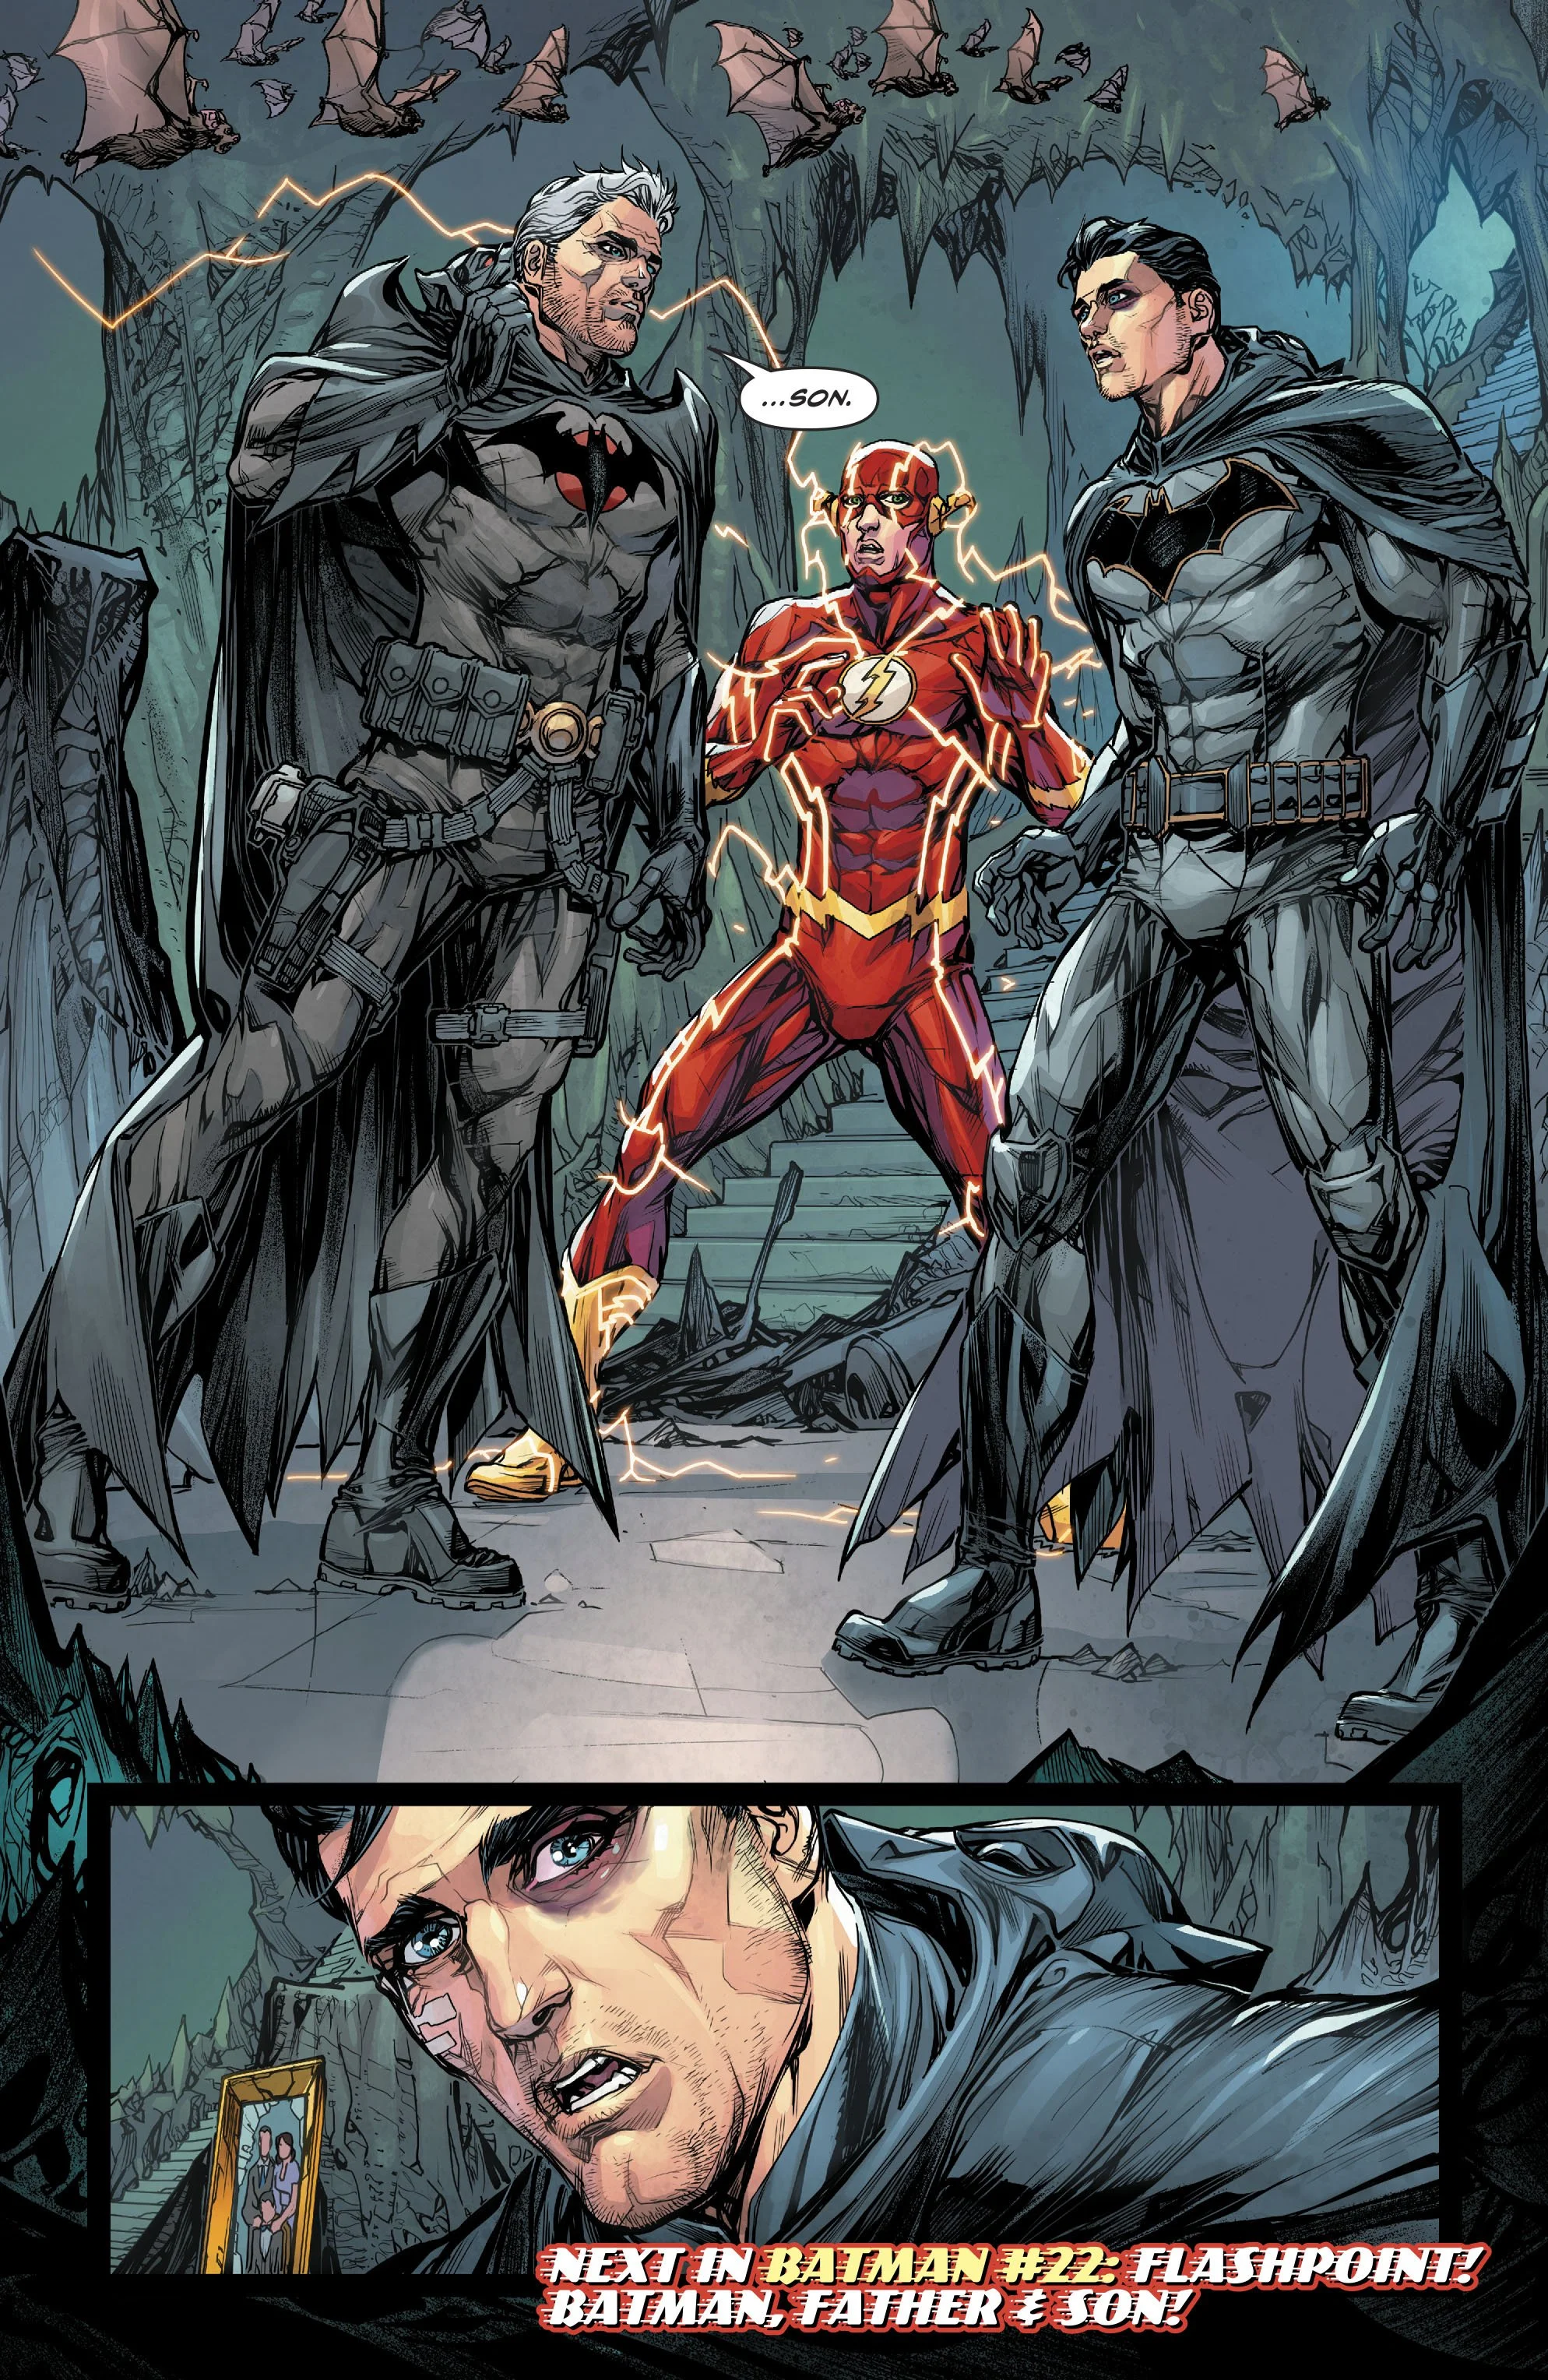 Бэтмен встретил отца из параллельной вселенной, и он тоже Бэтмен  - фото 2